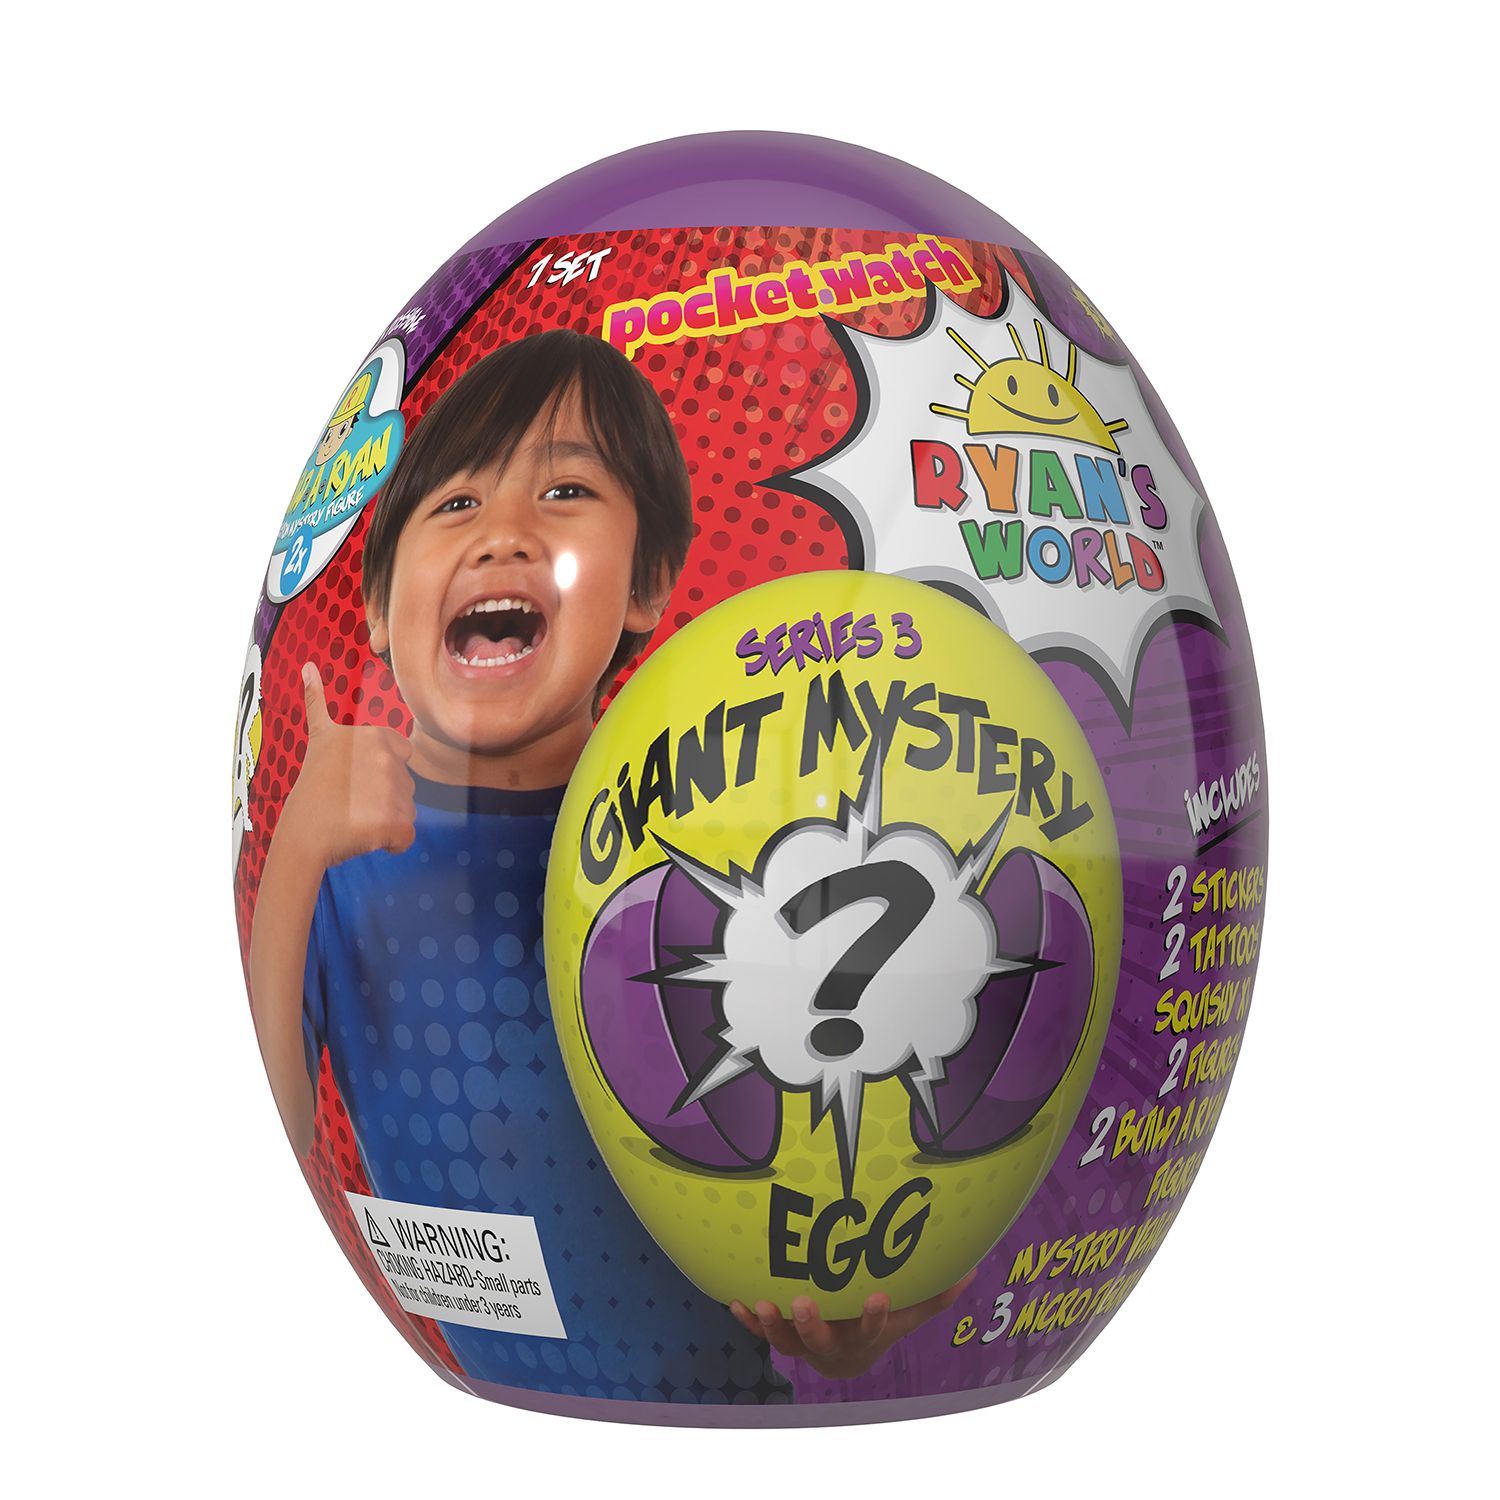 ryan's giant mystery egg